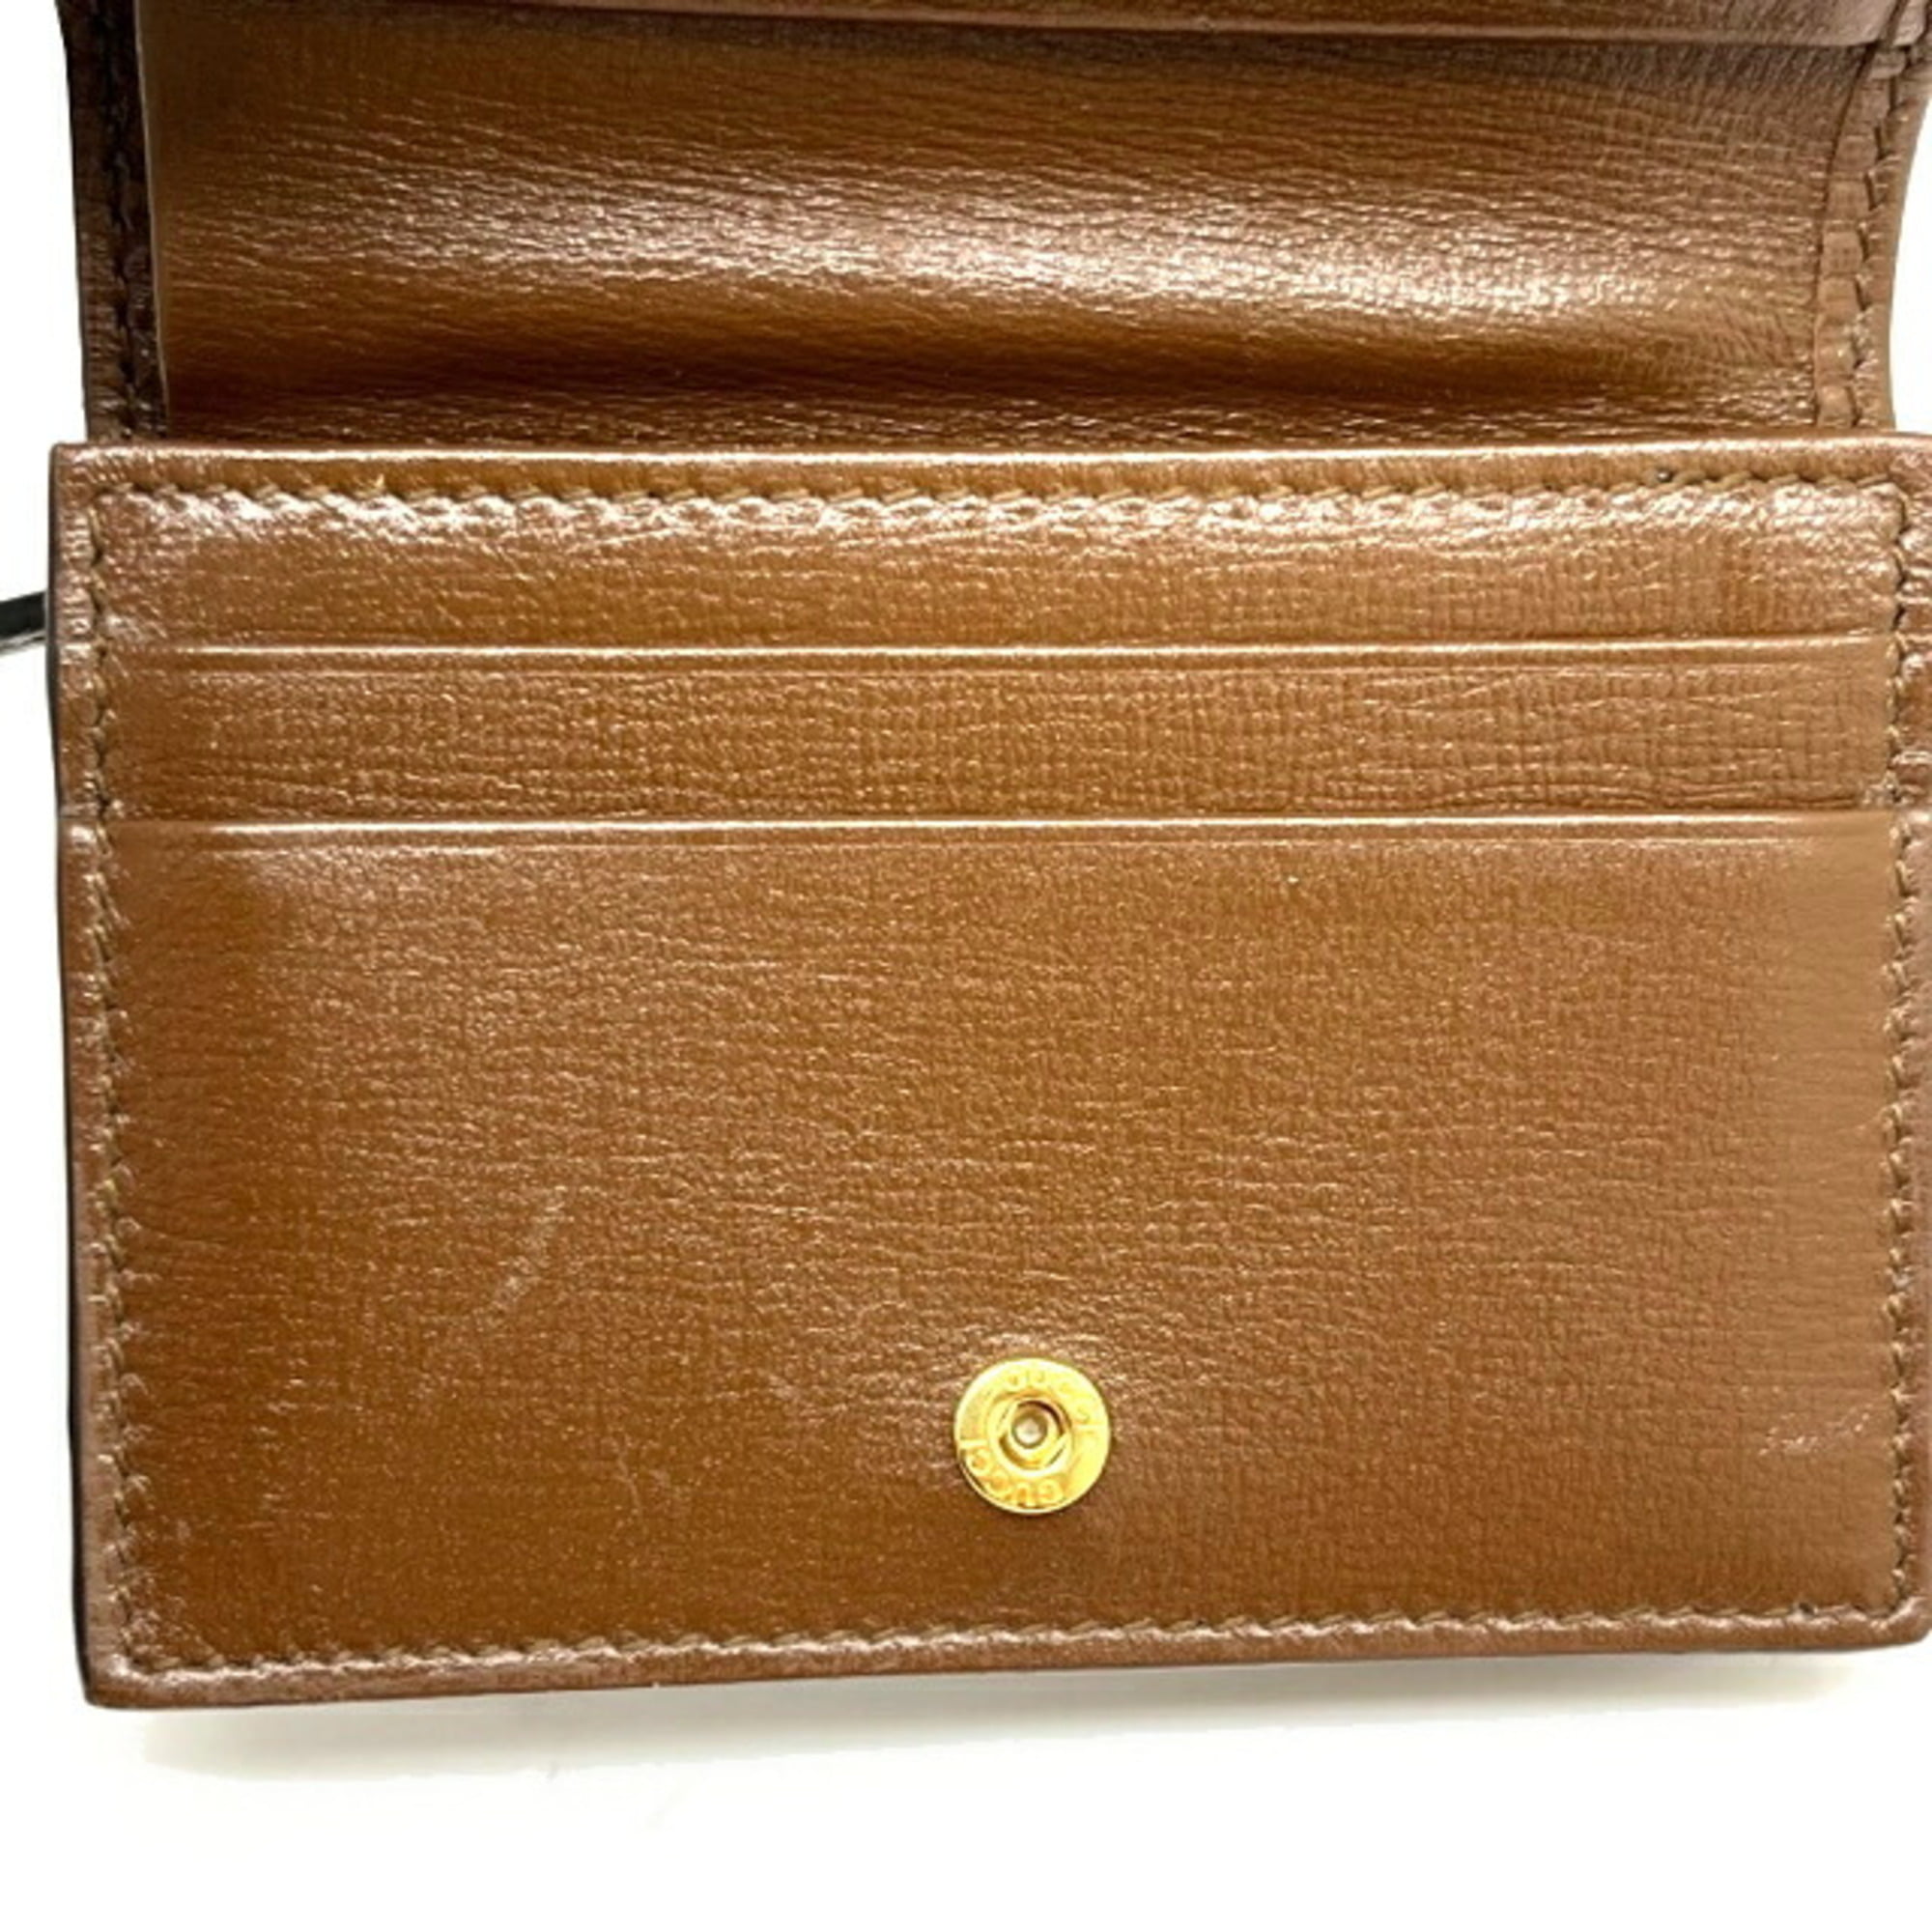 Wallets & purses Gucci - GG supreme canvas bi-fold wallet - 365491KGD8R9791